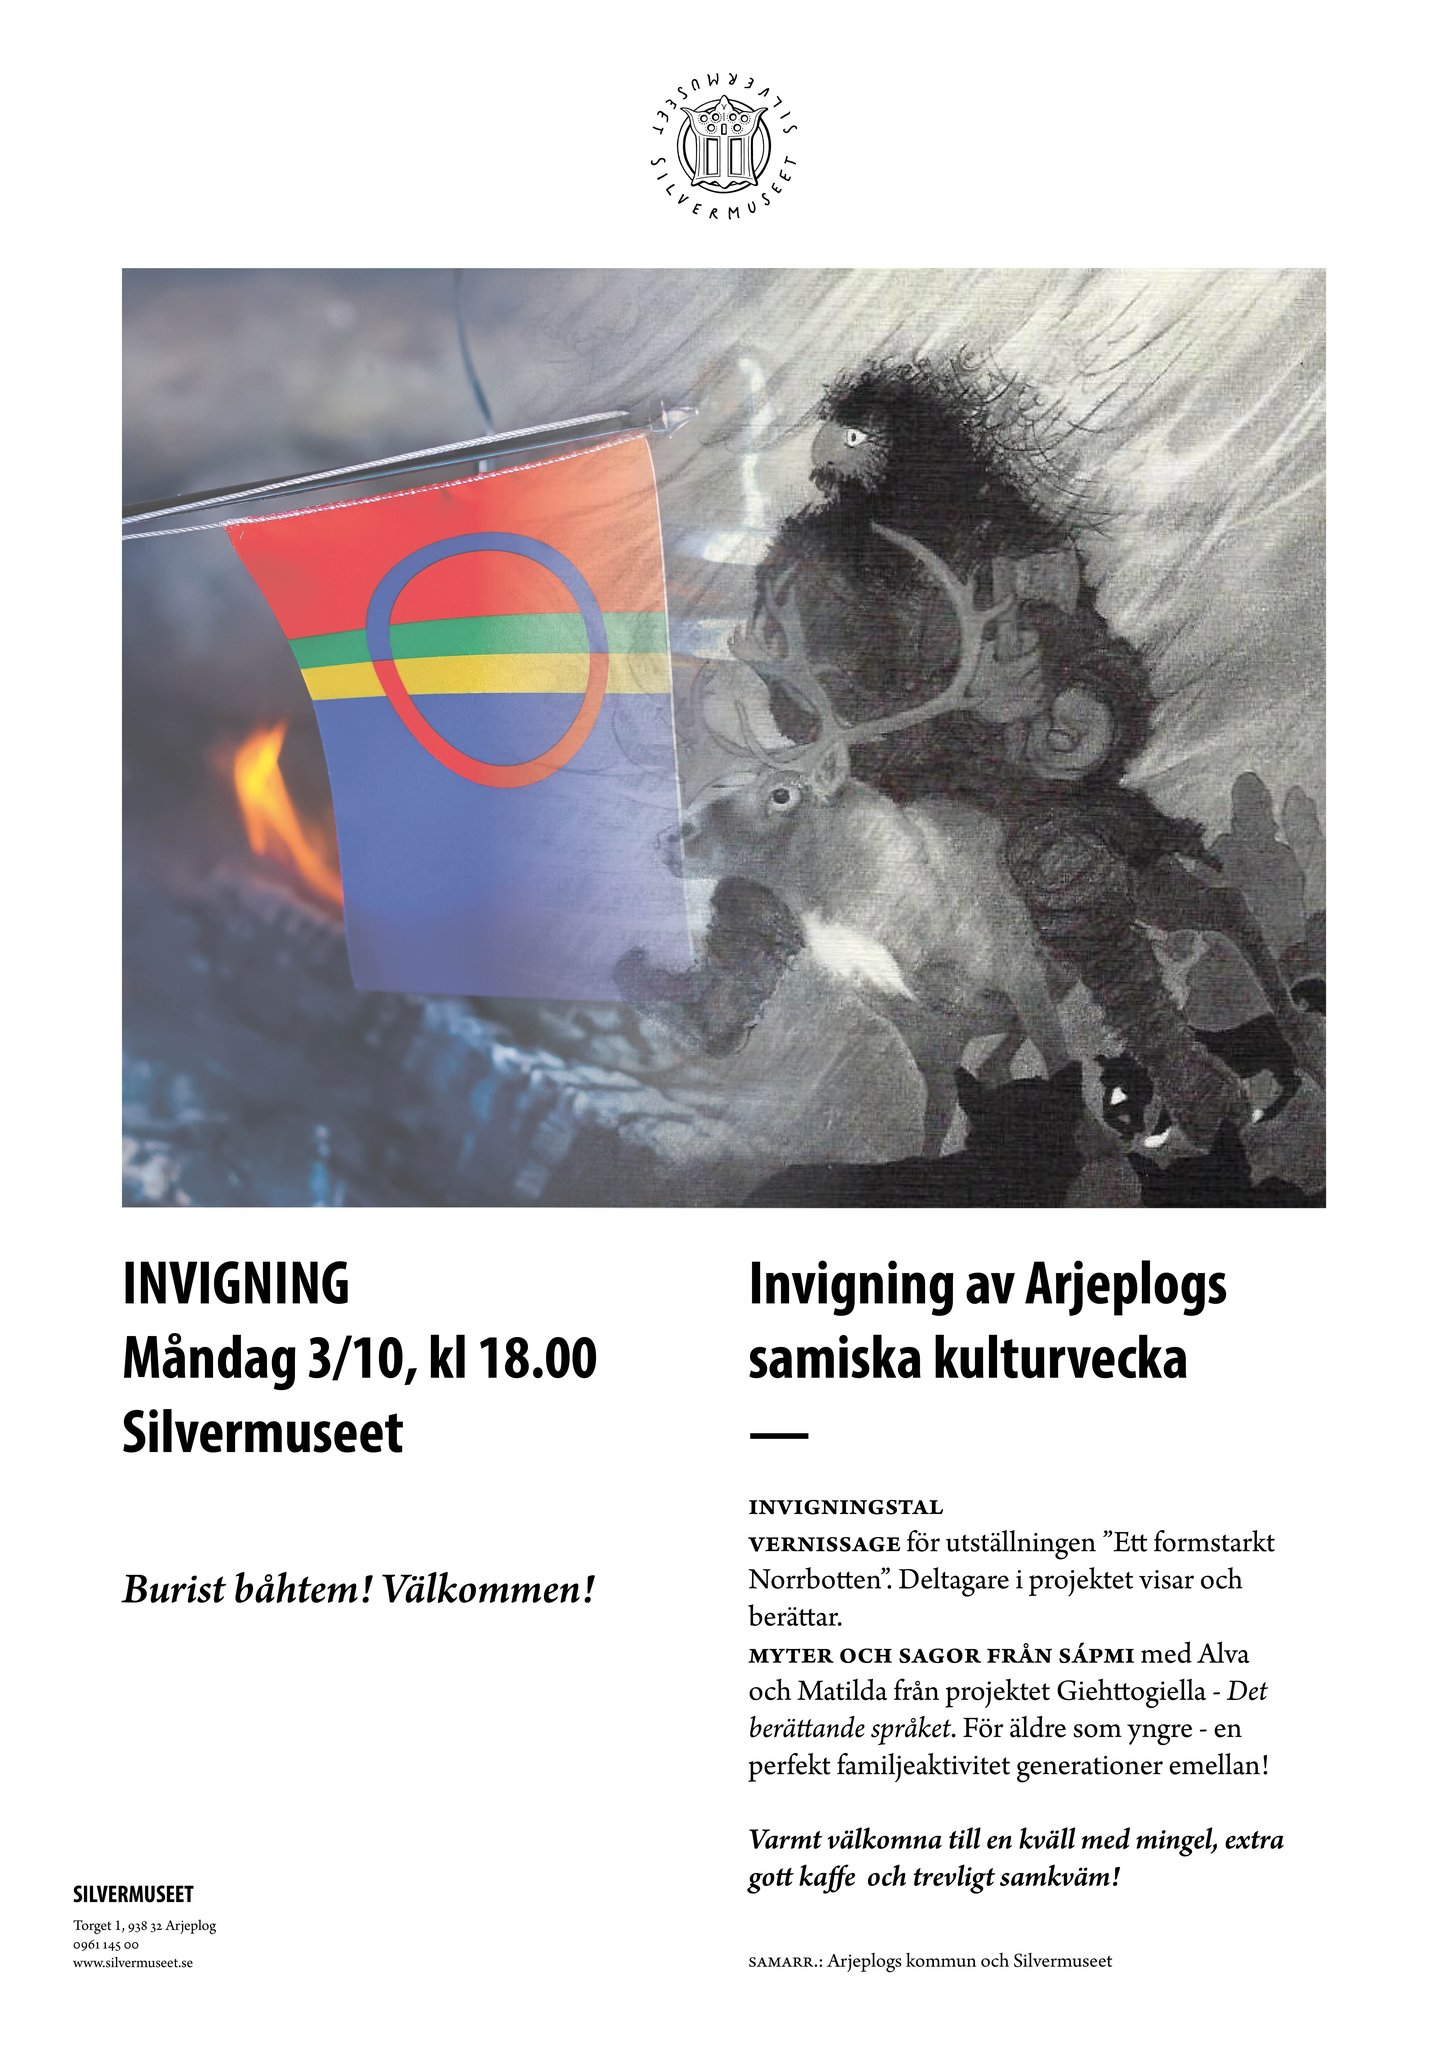 Annons för Höstmarknaden. Samisk flagga och samiskt konstverk i svartvitt föreställande en person som rider på en ren